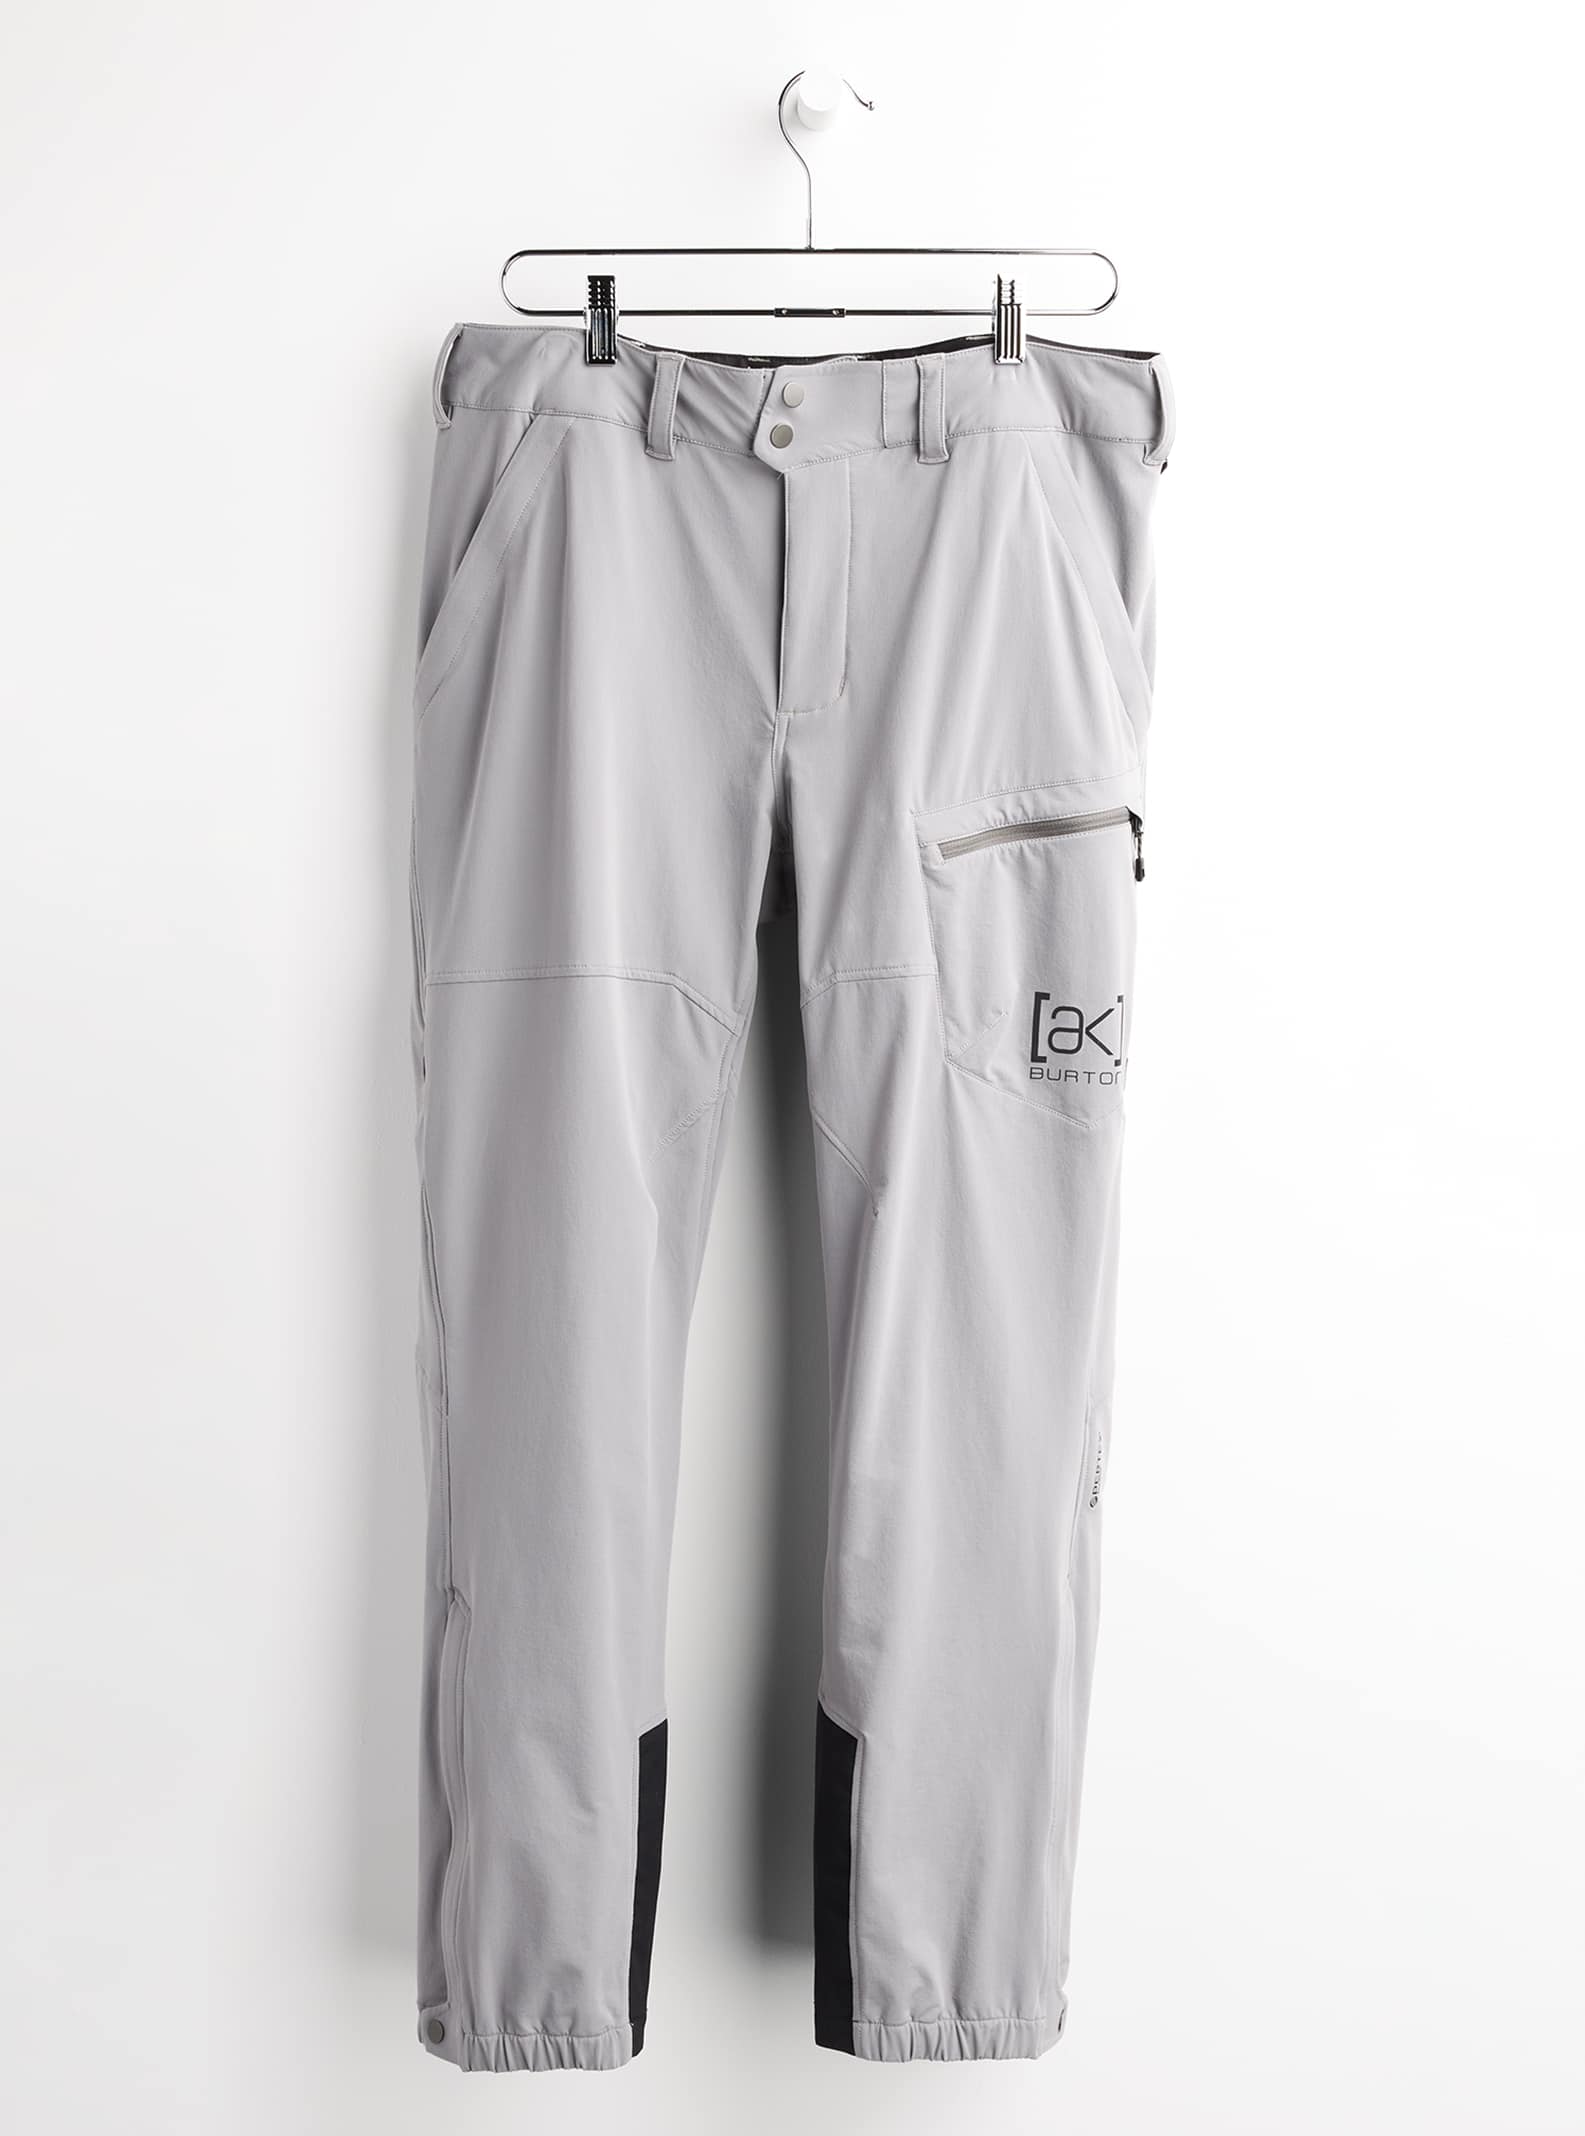 Burton Men's [ak] Softshell Pants, 30